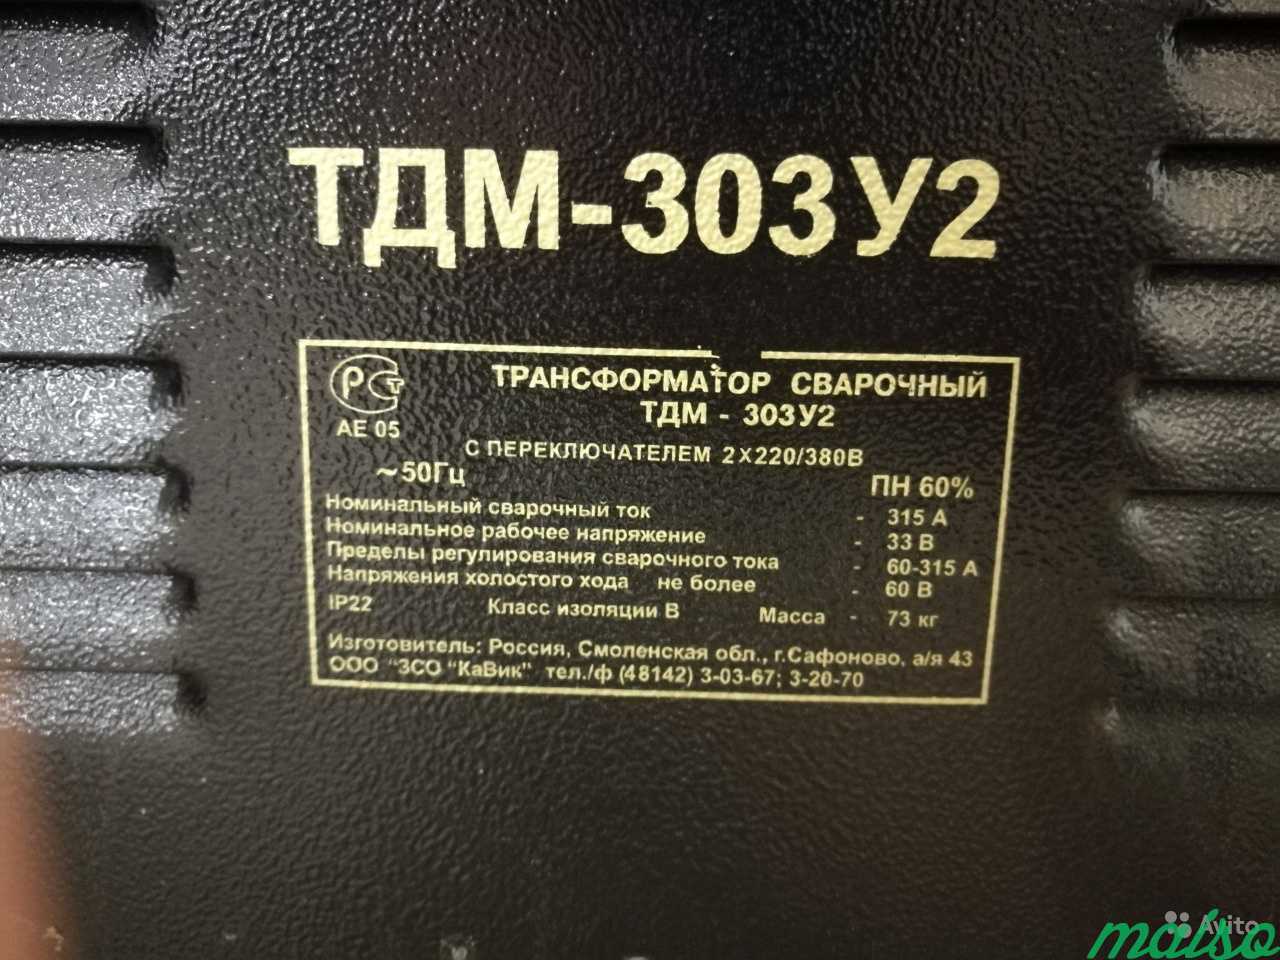 Трансформаторы tdm